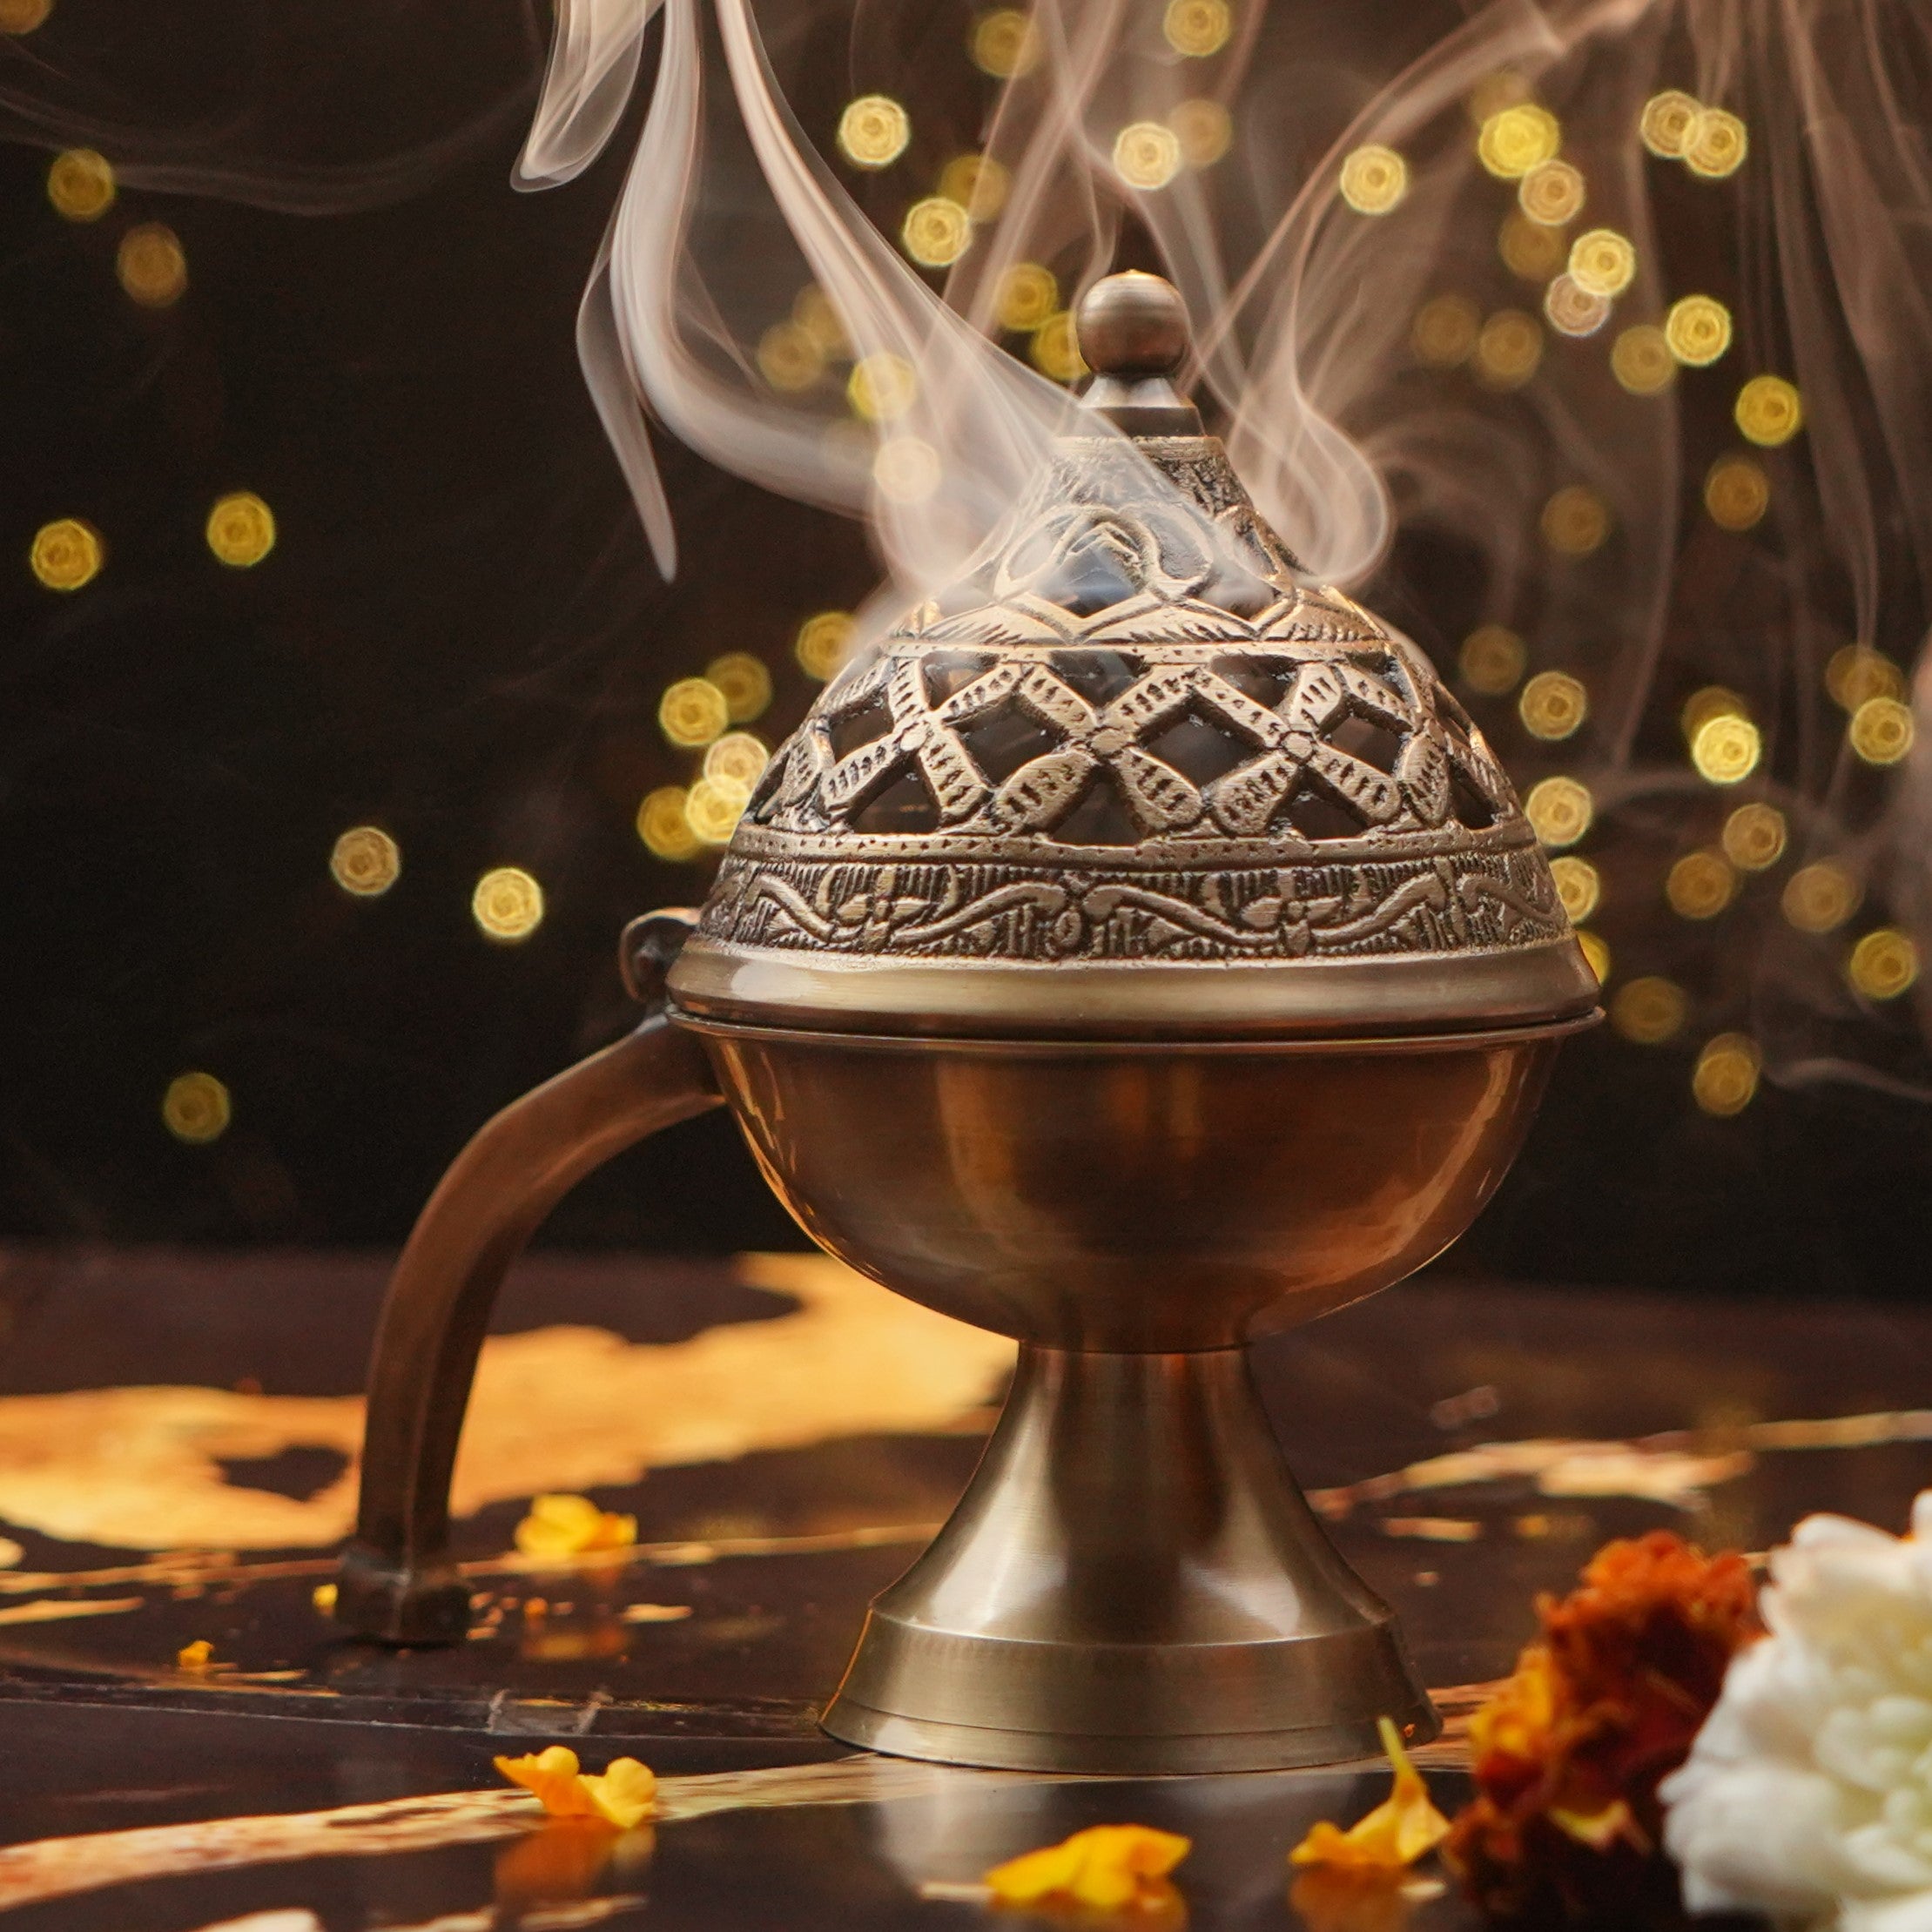 Oud Bakhoor (Set of 6 Fragrances) with Brass Loban Burner for Home Fra –  Vintage Veda